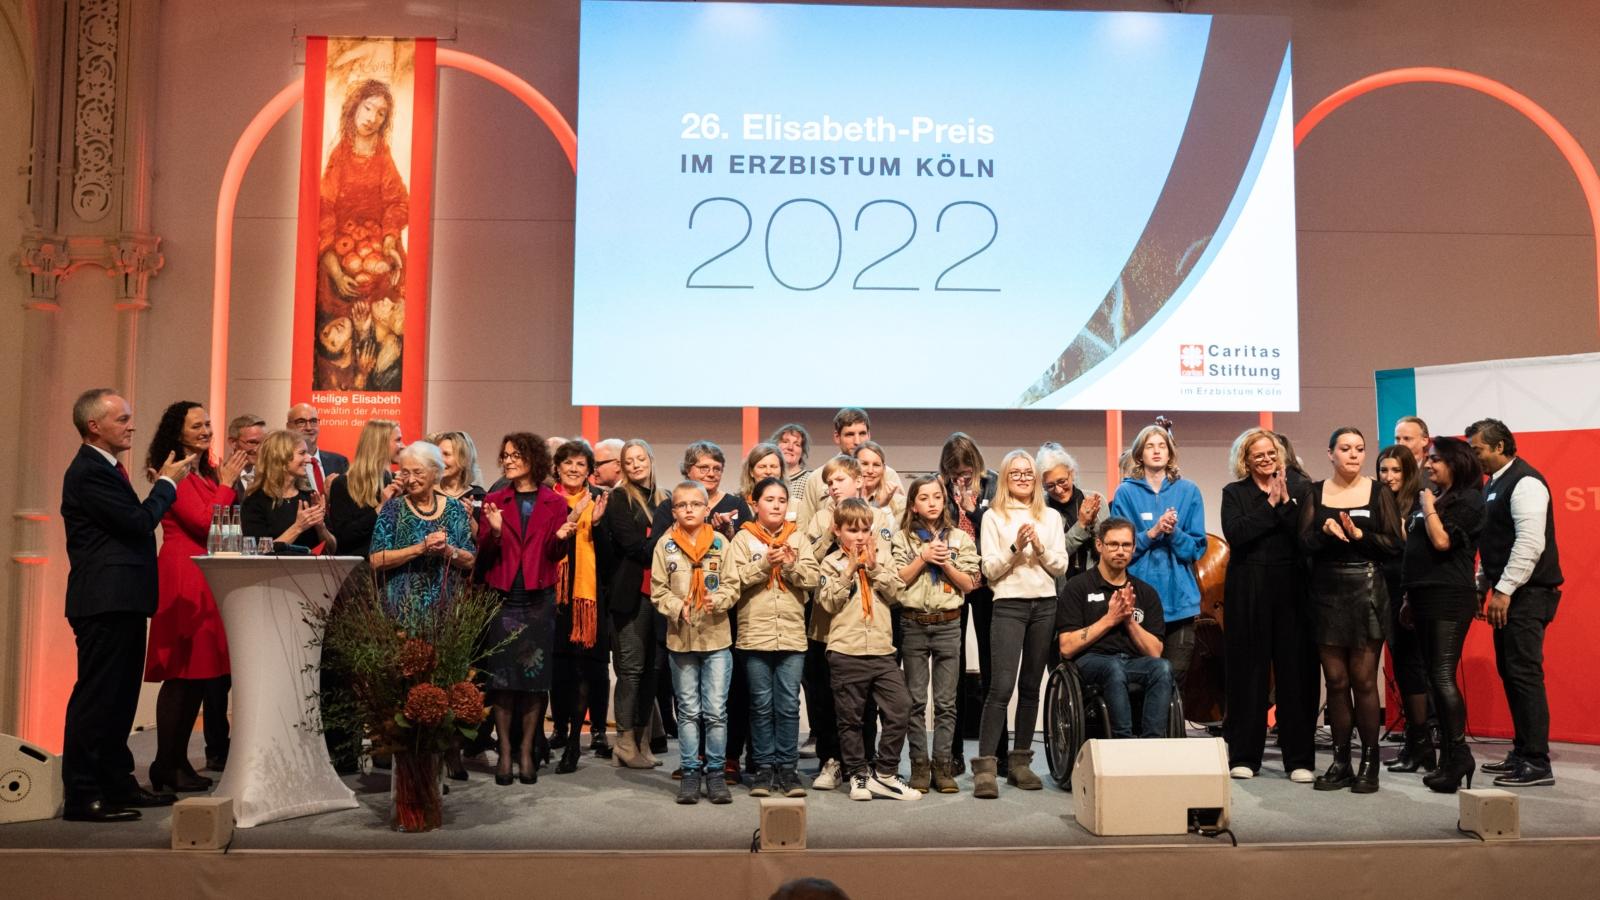 Elisabeth-Preis 2022